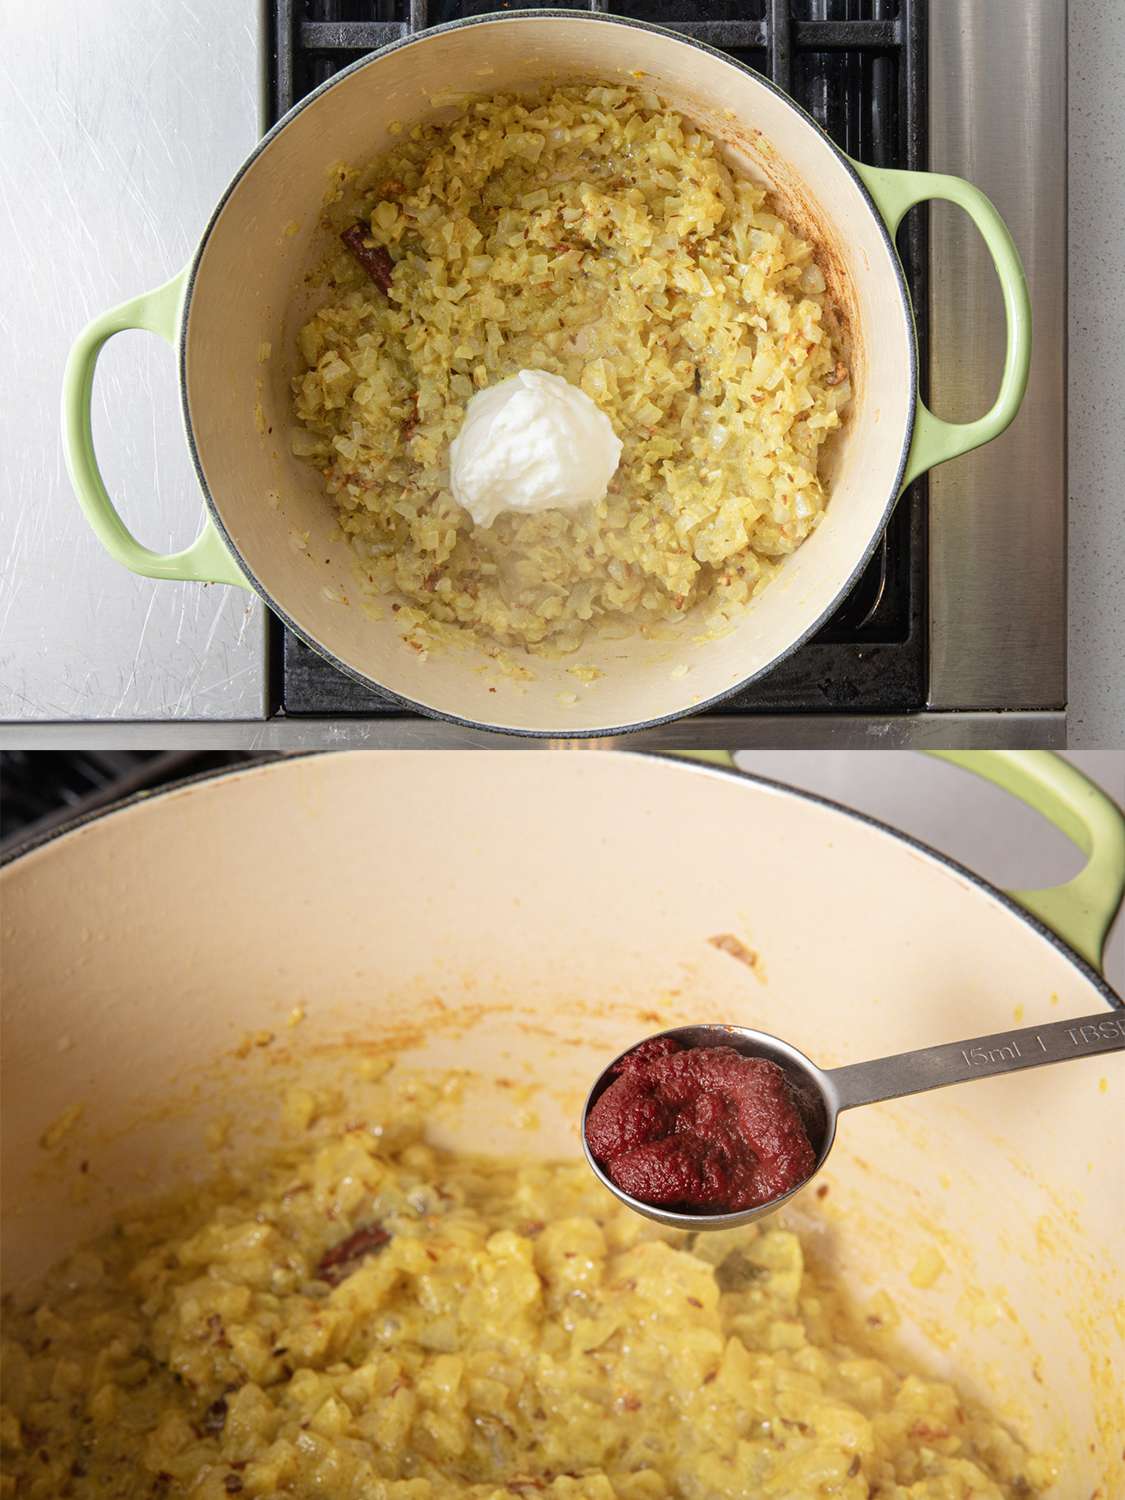 两个图像拼贴。上图:头顶上的酸奶加入荷兰烤箱。下图:即将加入番茄酱的侧角视图。